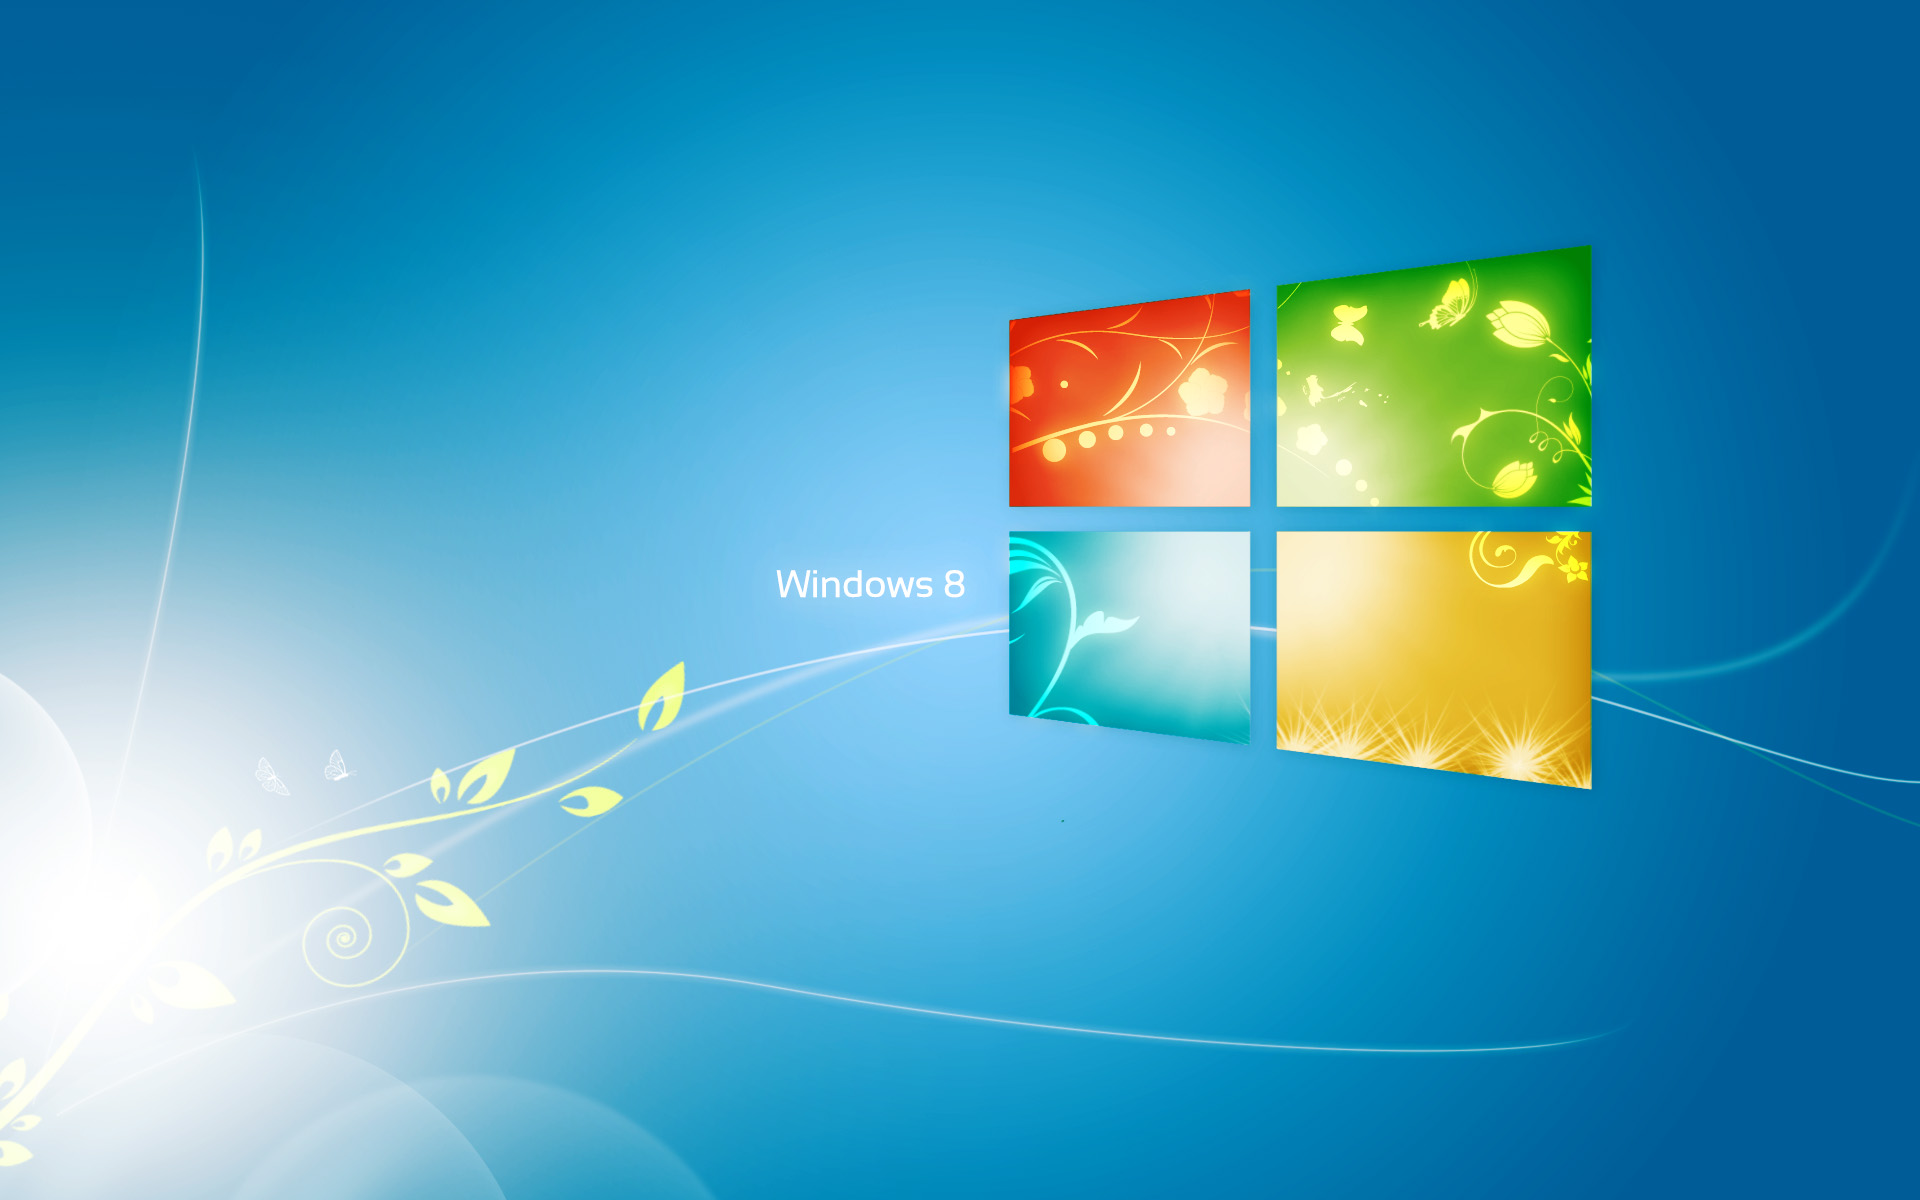 Hướng dẫn thay đổi hình nền màn hình khởi động Windows 8 sẽ giúp bạn một cách đơn giản và dễ dàng thực hiện việc trang trí cho màn hình của bạn. Từ đó, bạn có thể sáng tạo cho màn hình khởi động của mình thật sự độc đáo và phù hợp với tổng thể không gian làm việc của bạn.